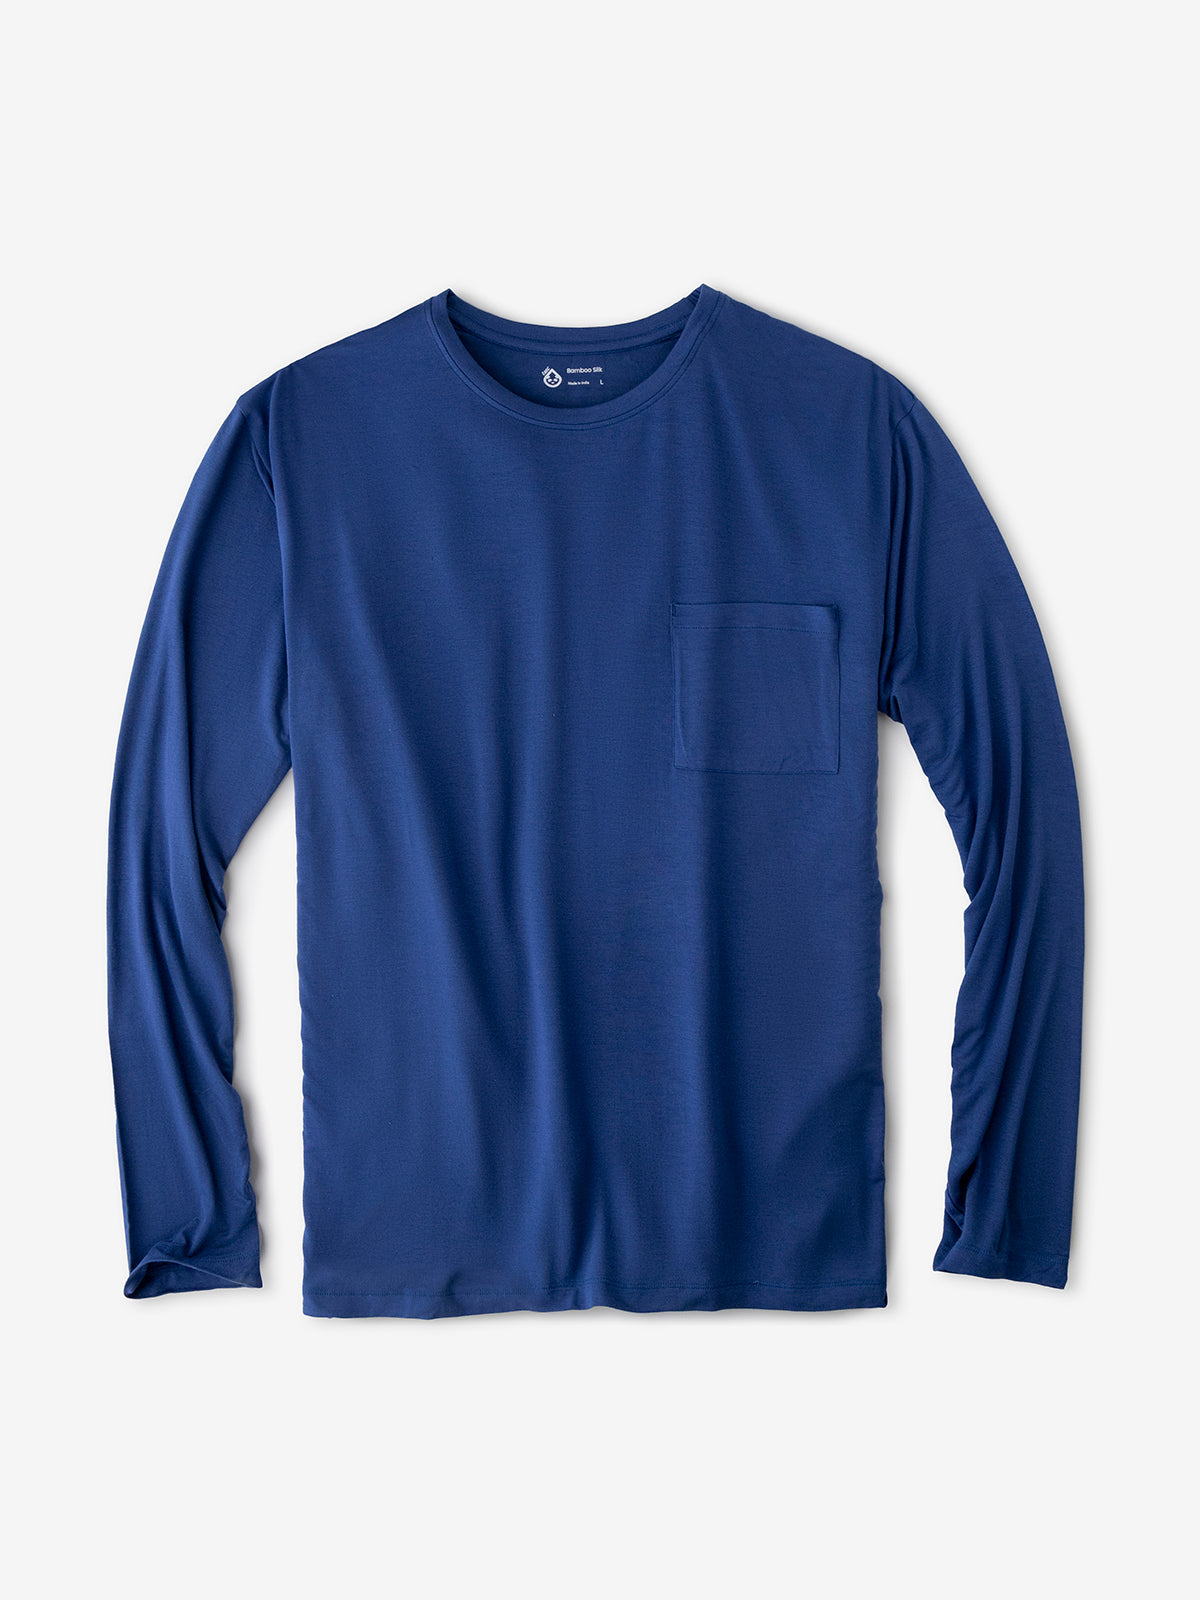 tasc Bamboo - Bamboo Silk Long Sleeve Sleep Shirt (Twilight)